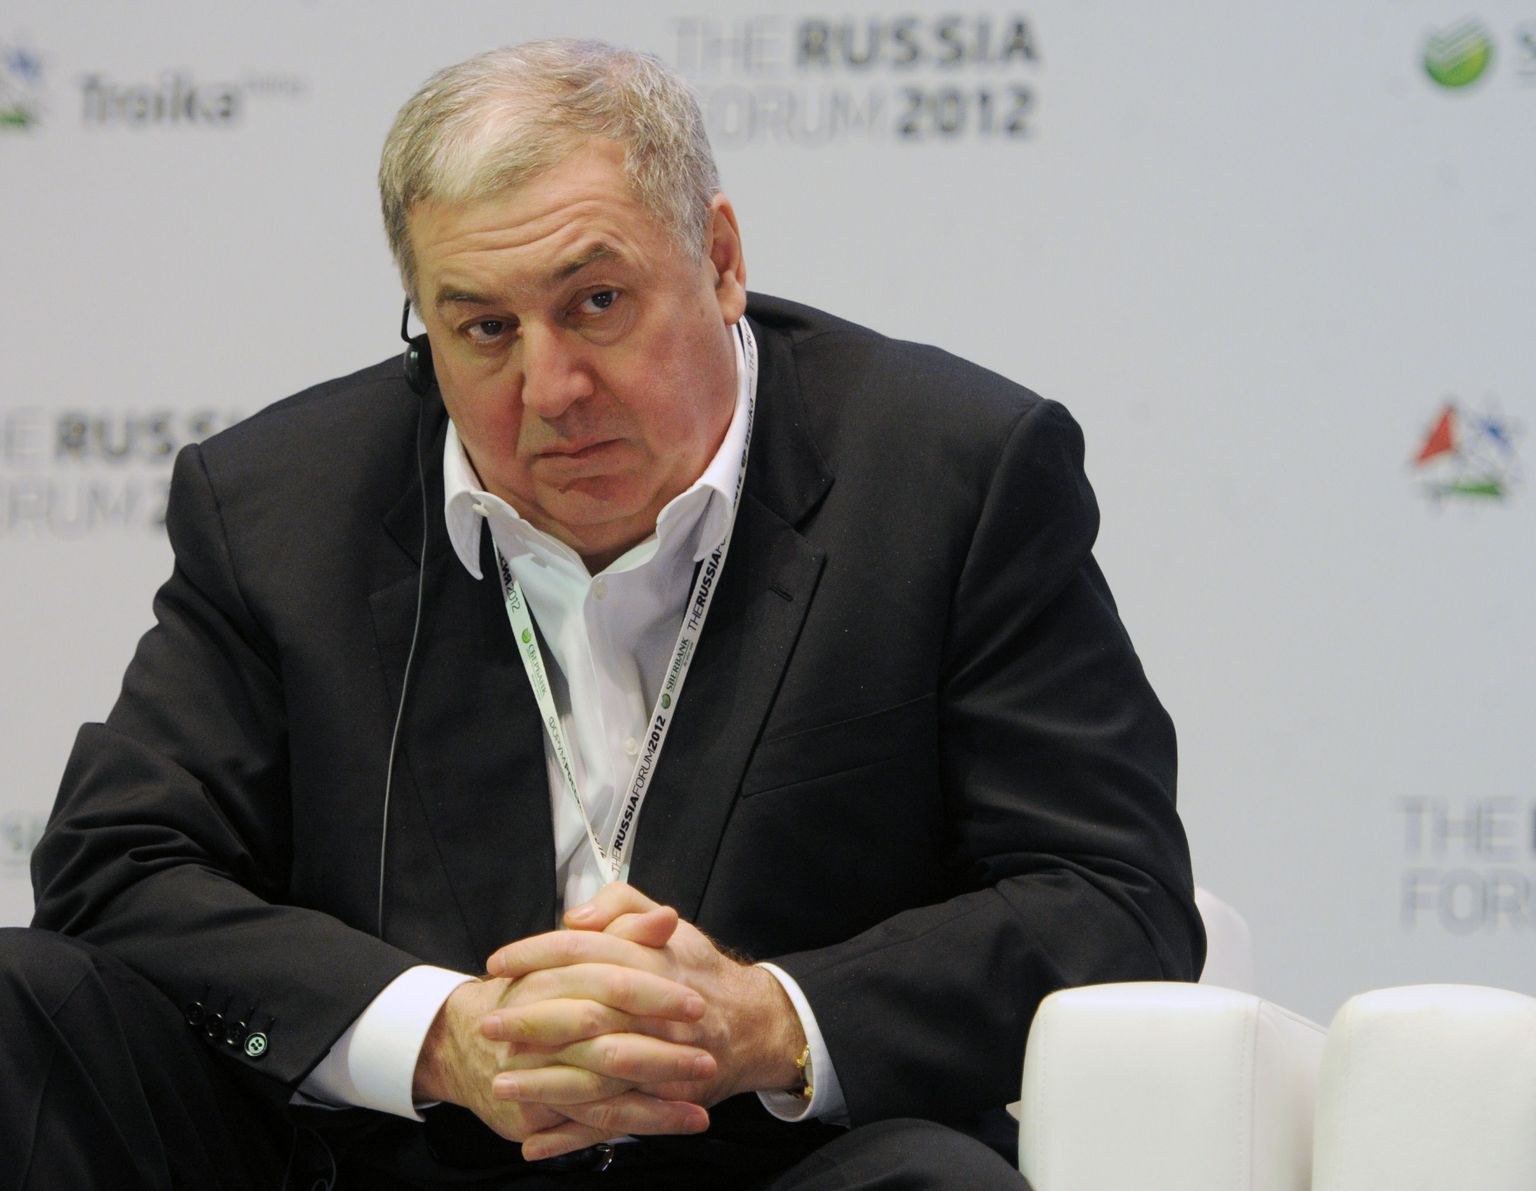 Venemaa kahekümne rikkaima inimese hulka kuuluv Mihhail Gutserijev majanduskonverentsil The Russia Forum 2012 Moskva rahvusvahelises muusikamajas.